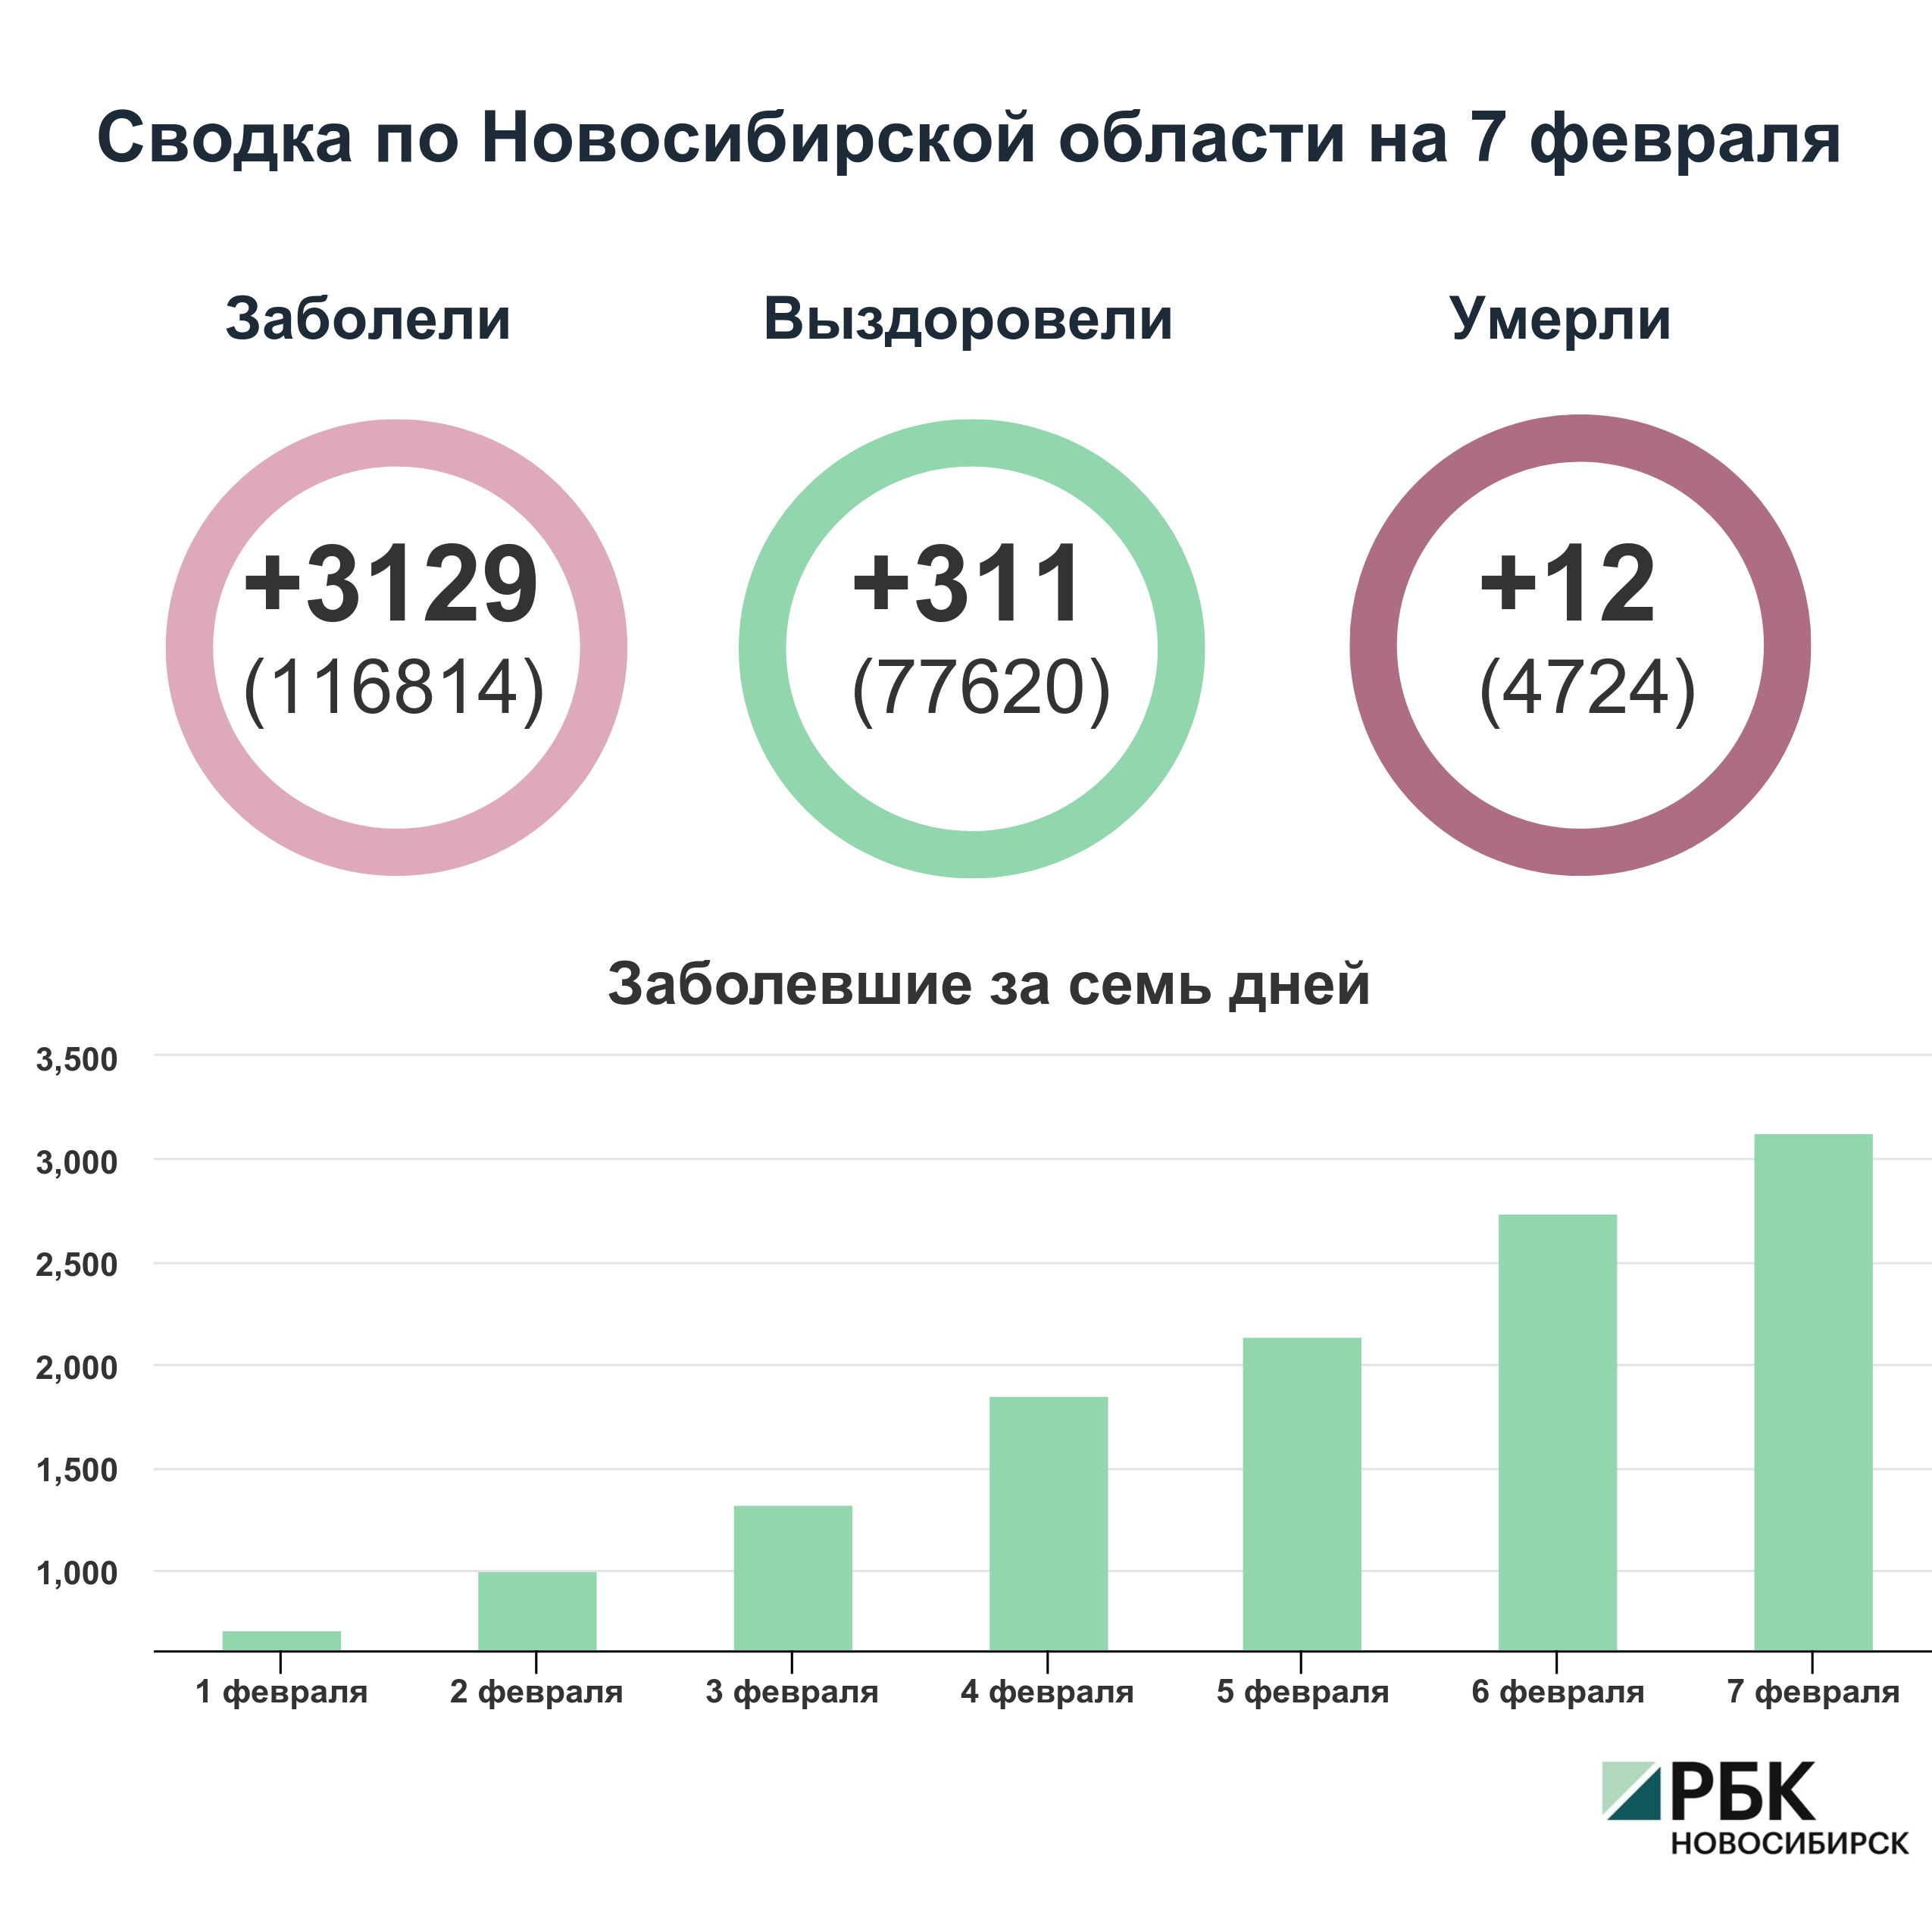 Коронавирус в Новосибирске: сводка на 7 февраля